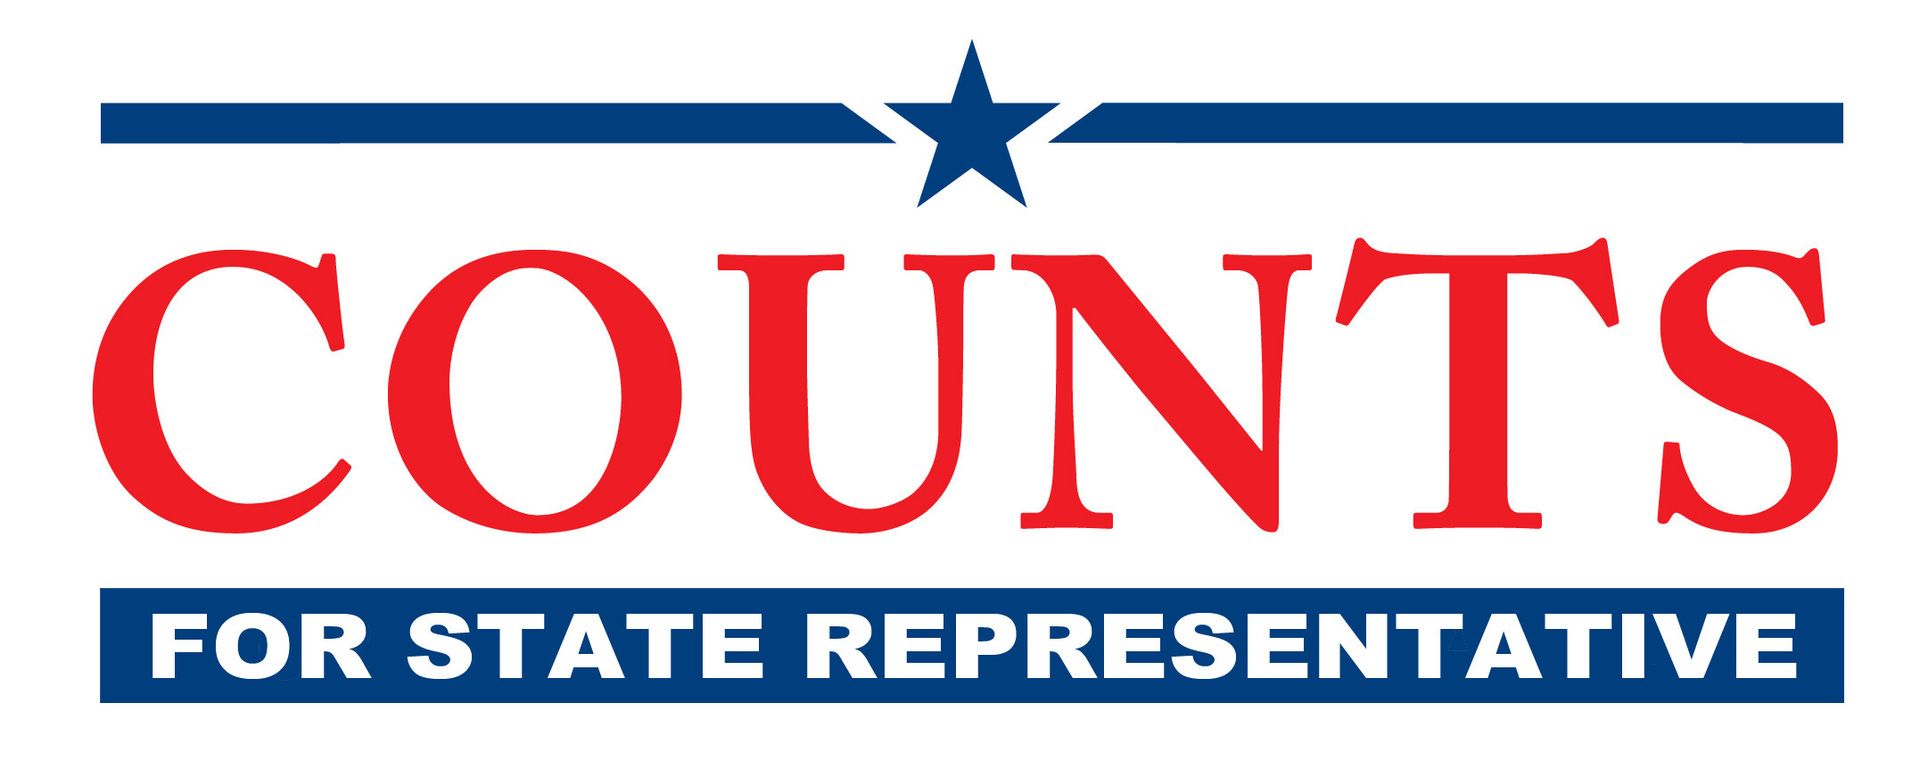 Campaign logo   plain text